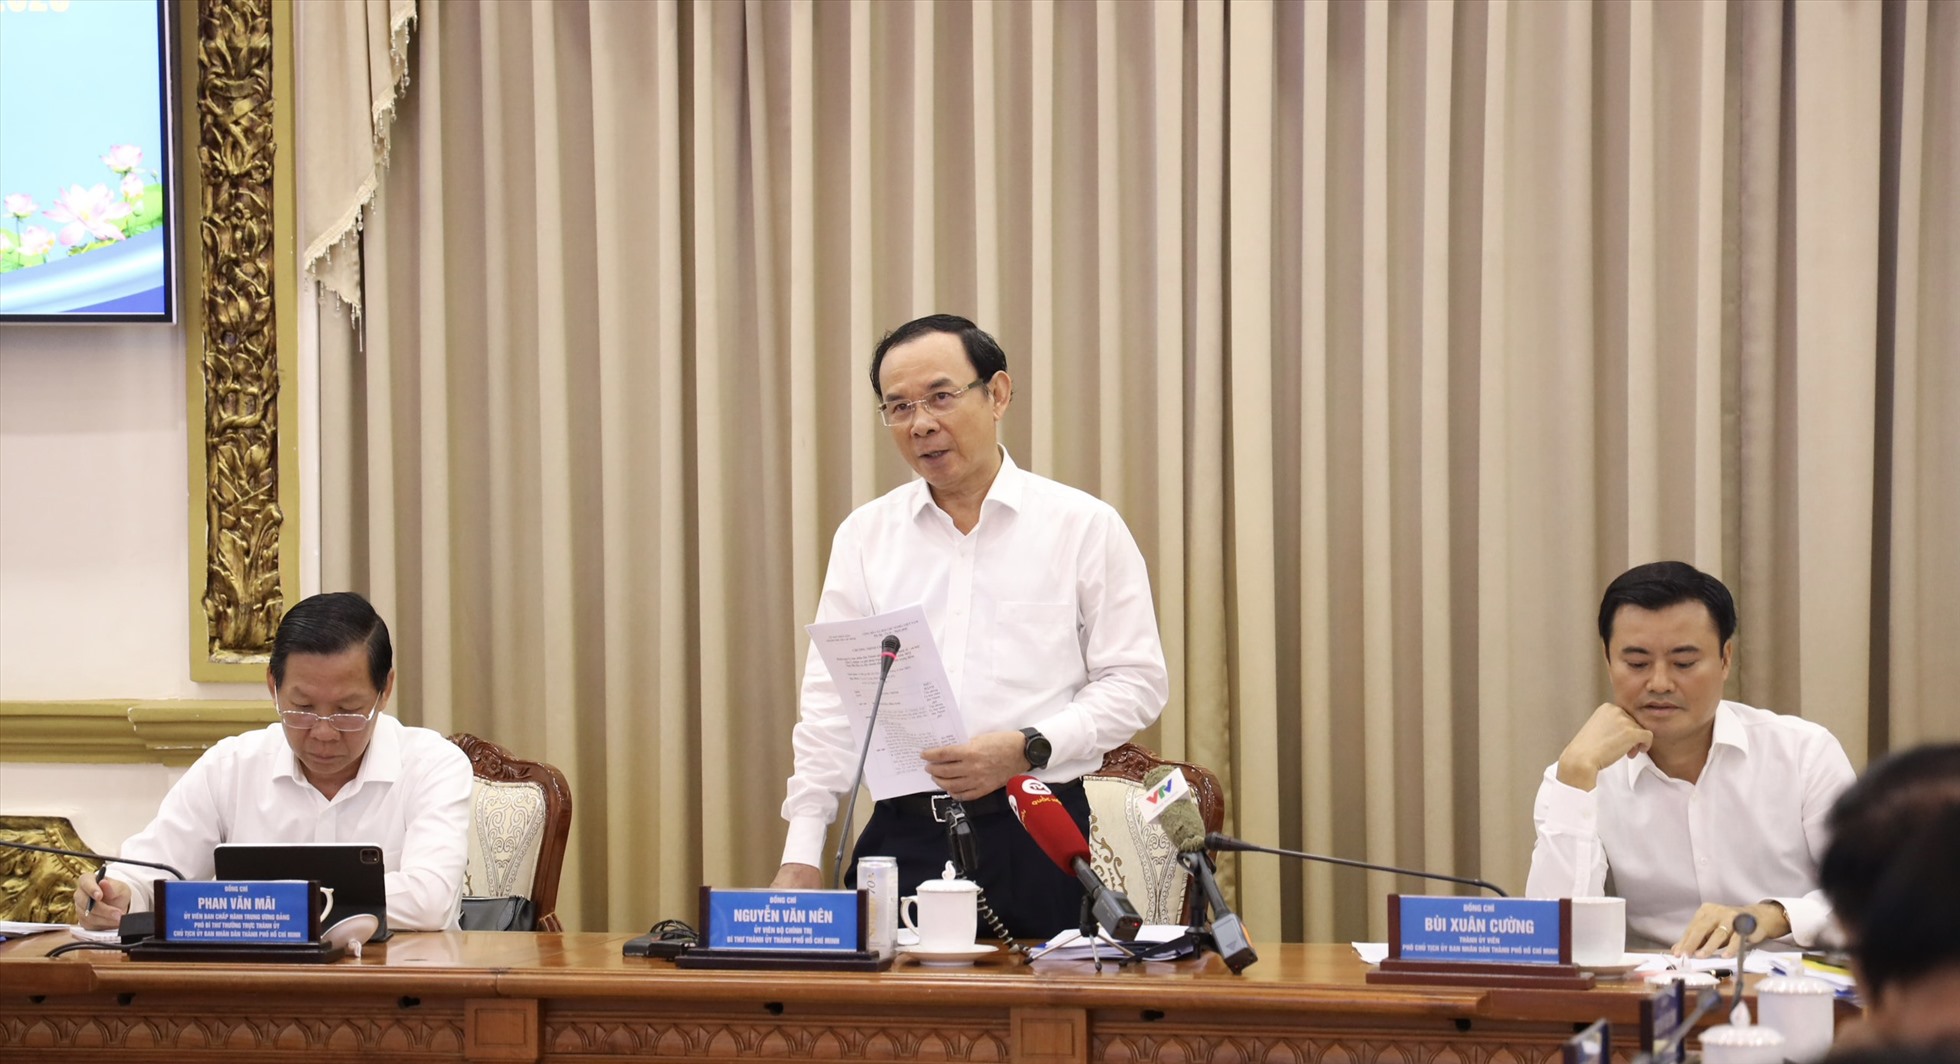 Bí thư Thành ủy TP Hồ Chí Minh Nguyễn Văn Nên phát biểu chỉ đạo hội nghị.  Ảnh: Trung tâm báo chí